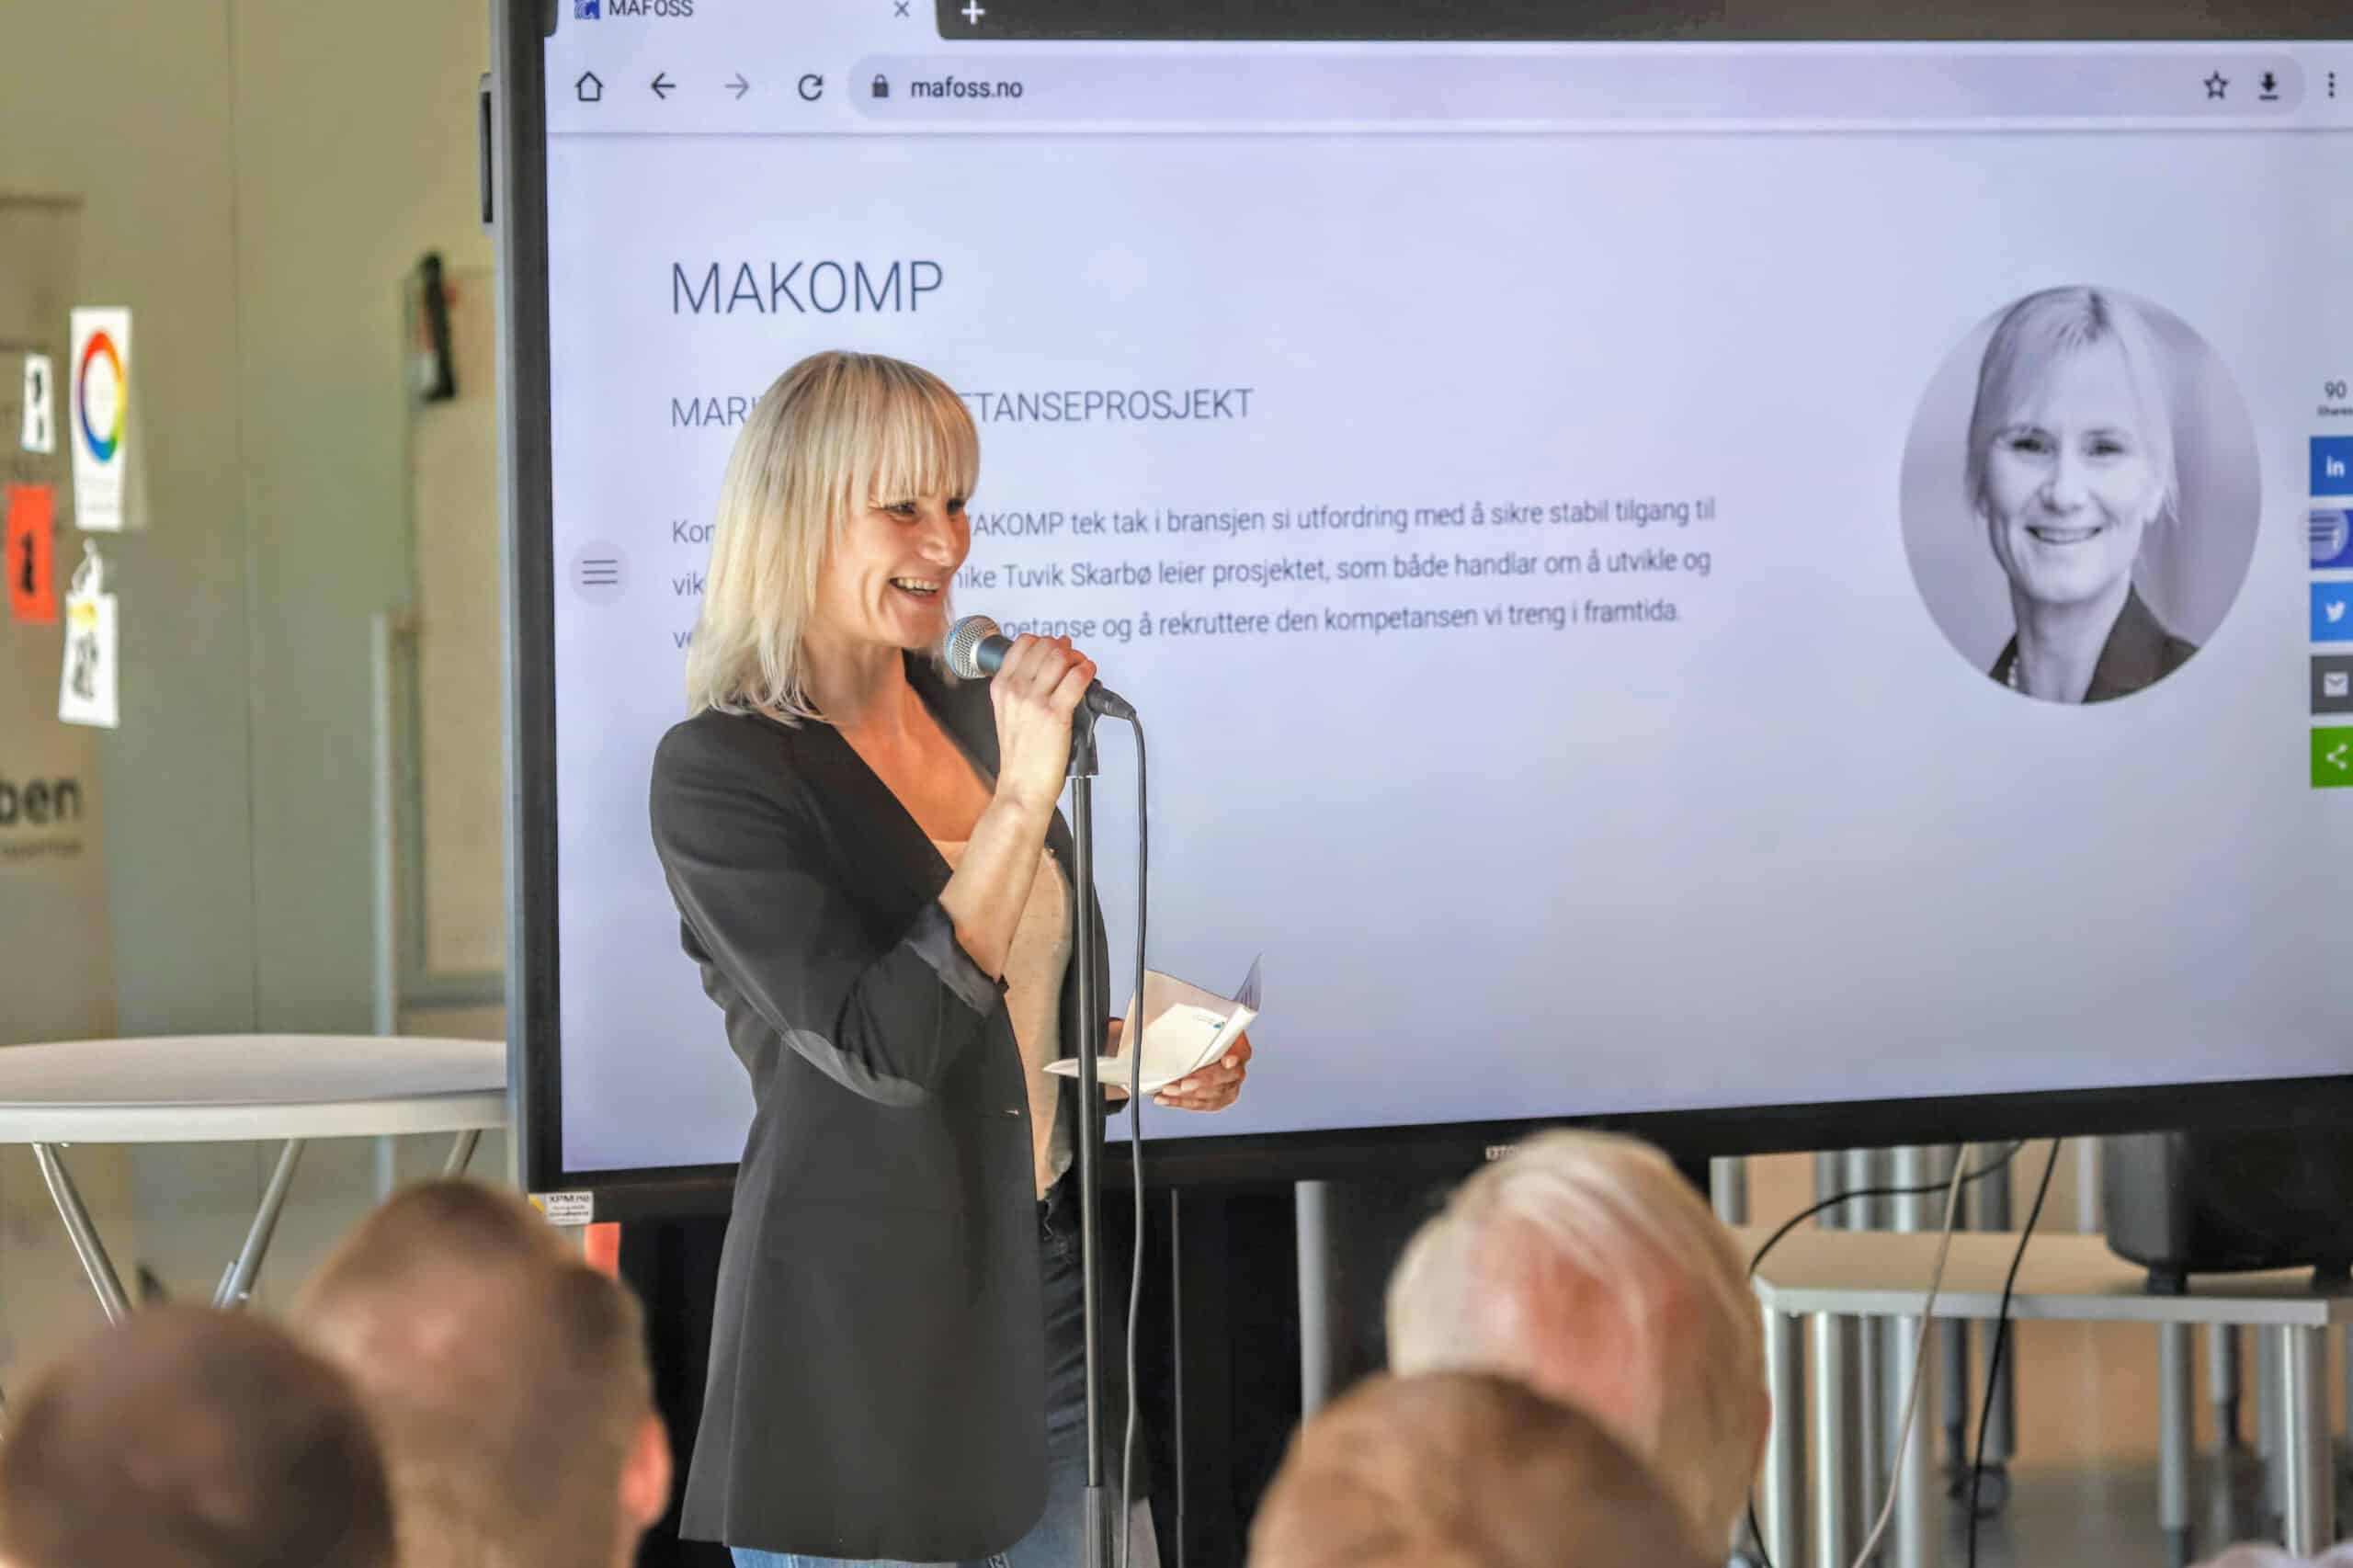 You are currently viewing Kompetanseprosjektet – MAKOMP 